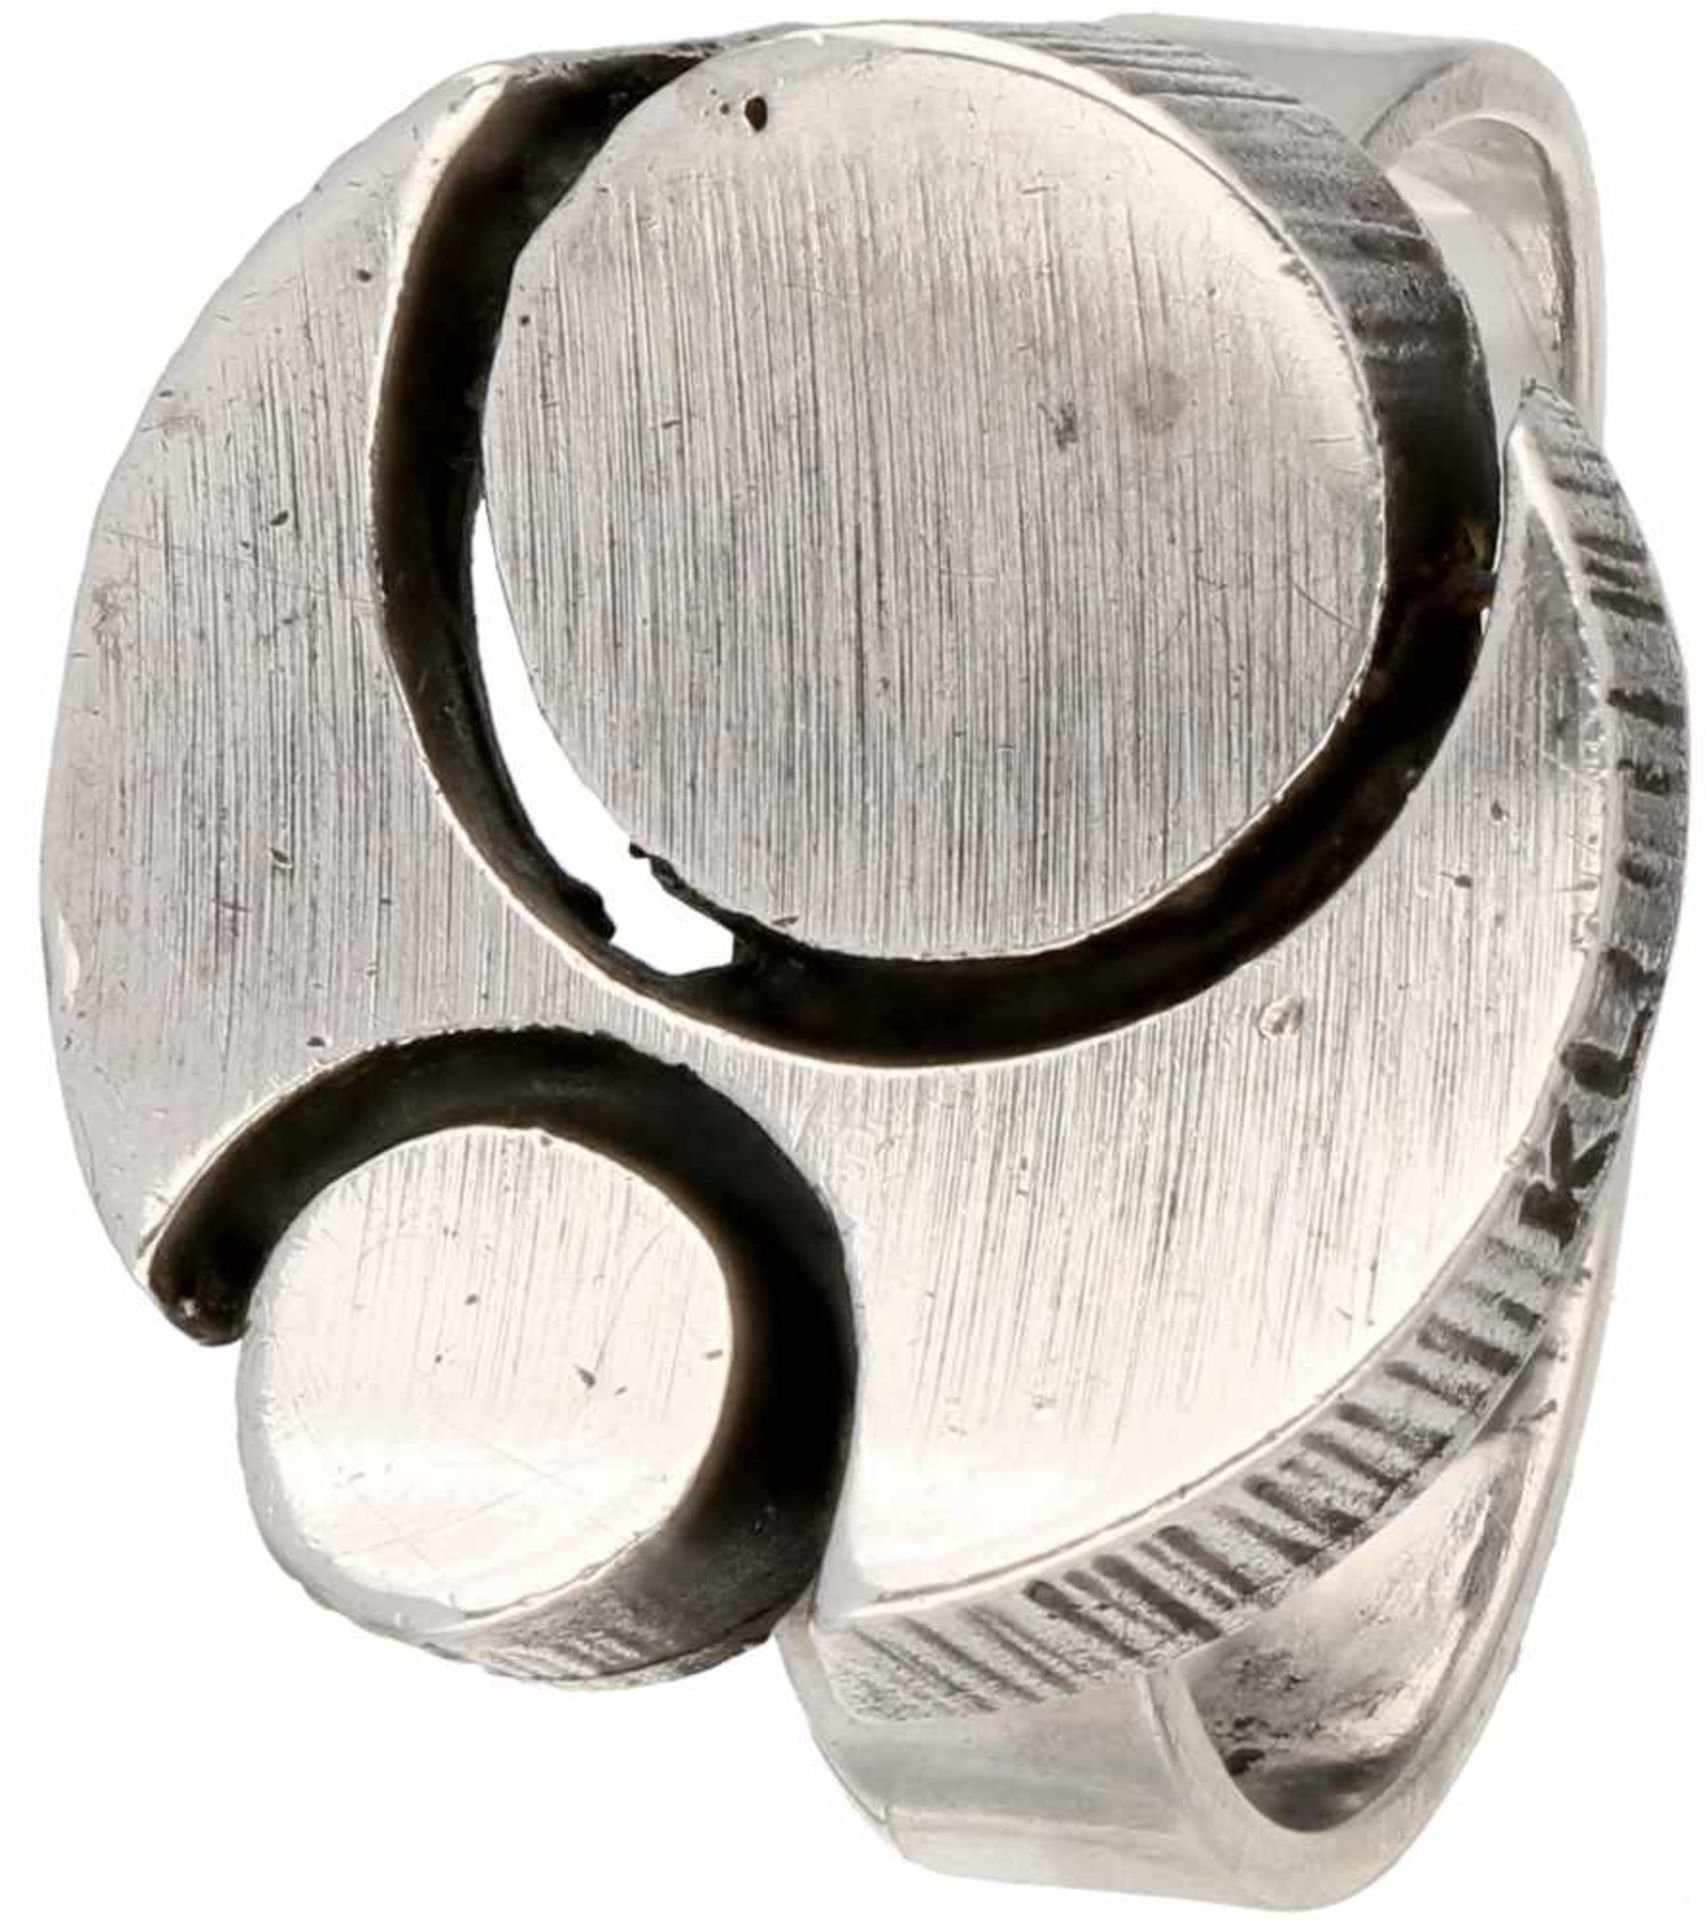 Zilveren Sten & Laine ring - 925/1000.Finland, 1977. Ring is verstelbaar. Ringmaat: 18,25 mm.